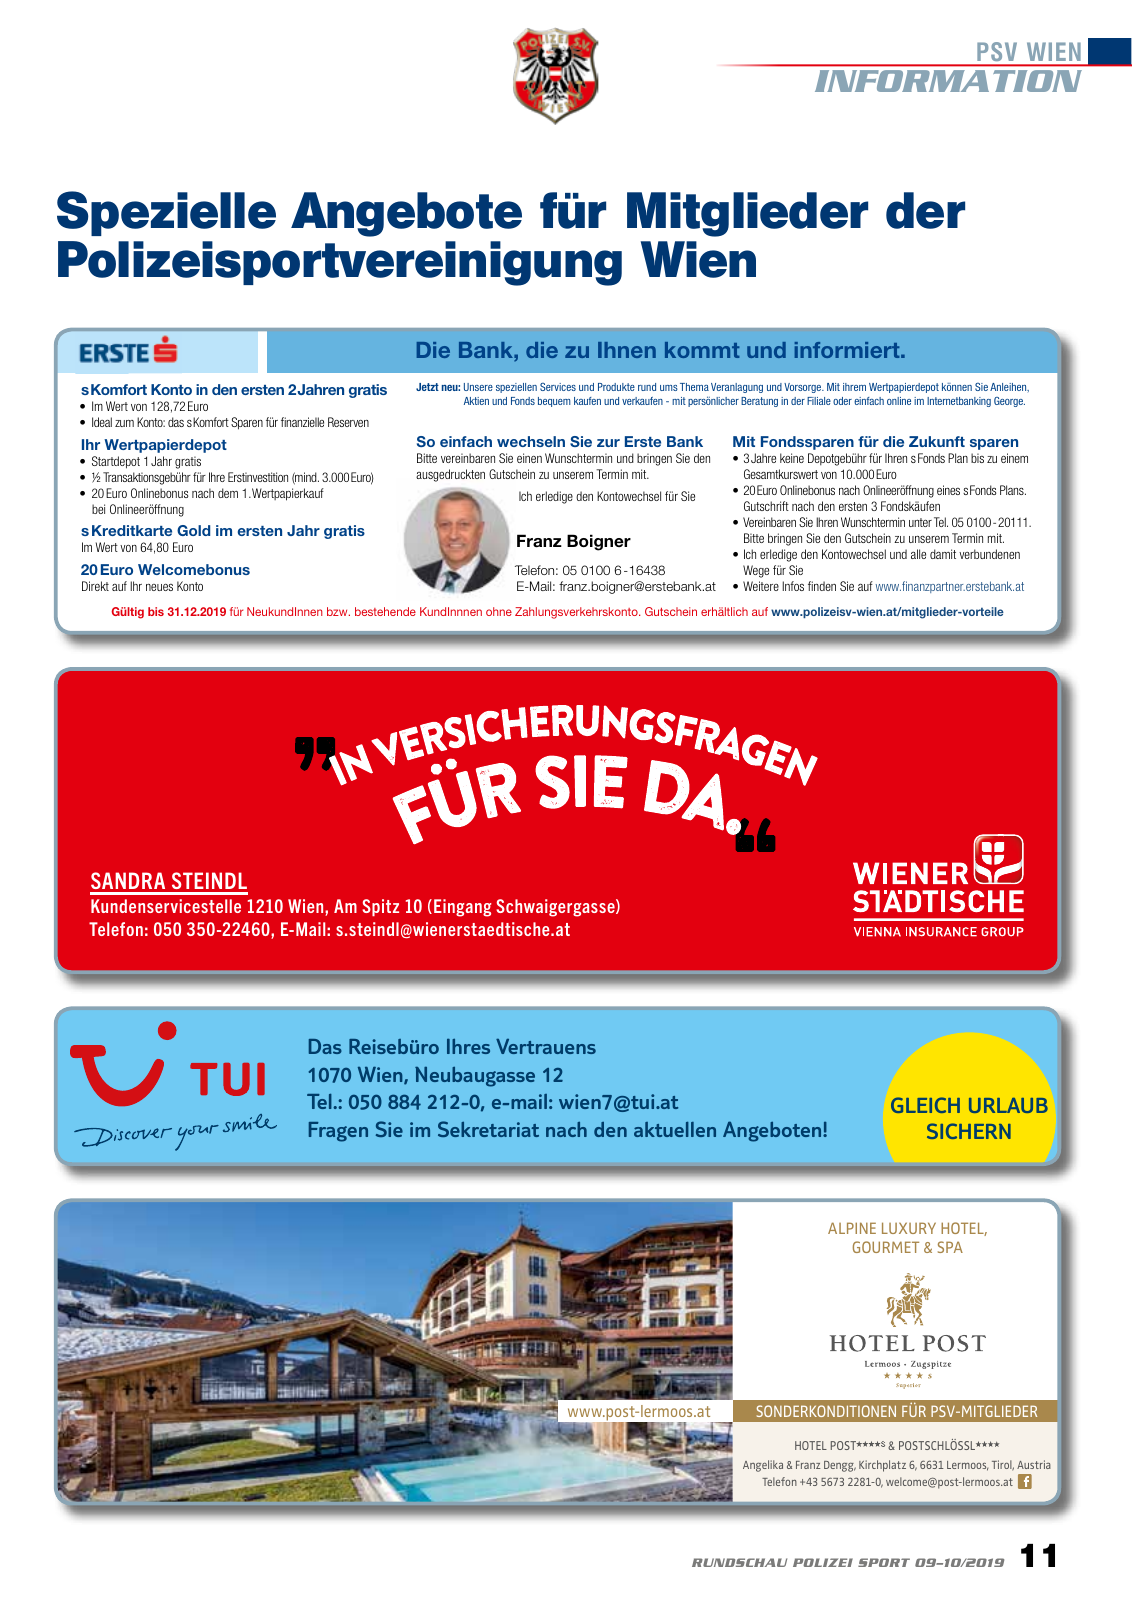 Vorschau Rundschau Polizei Sport 09-10/2019 Seite 11